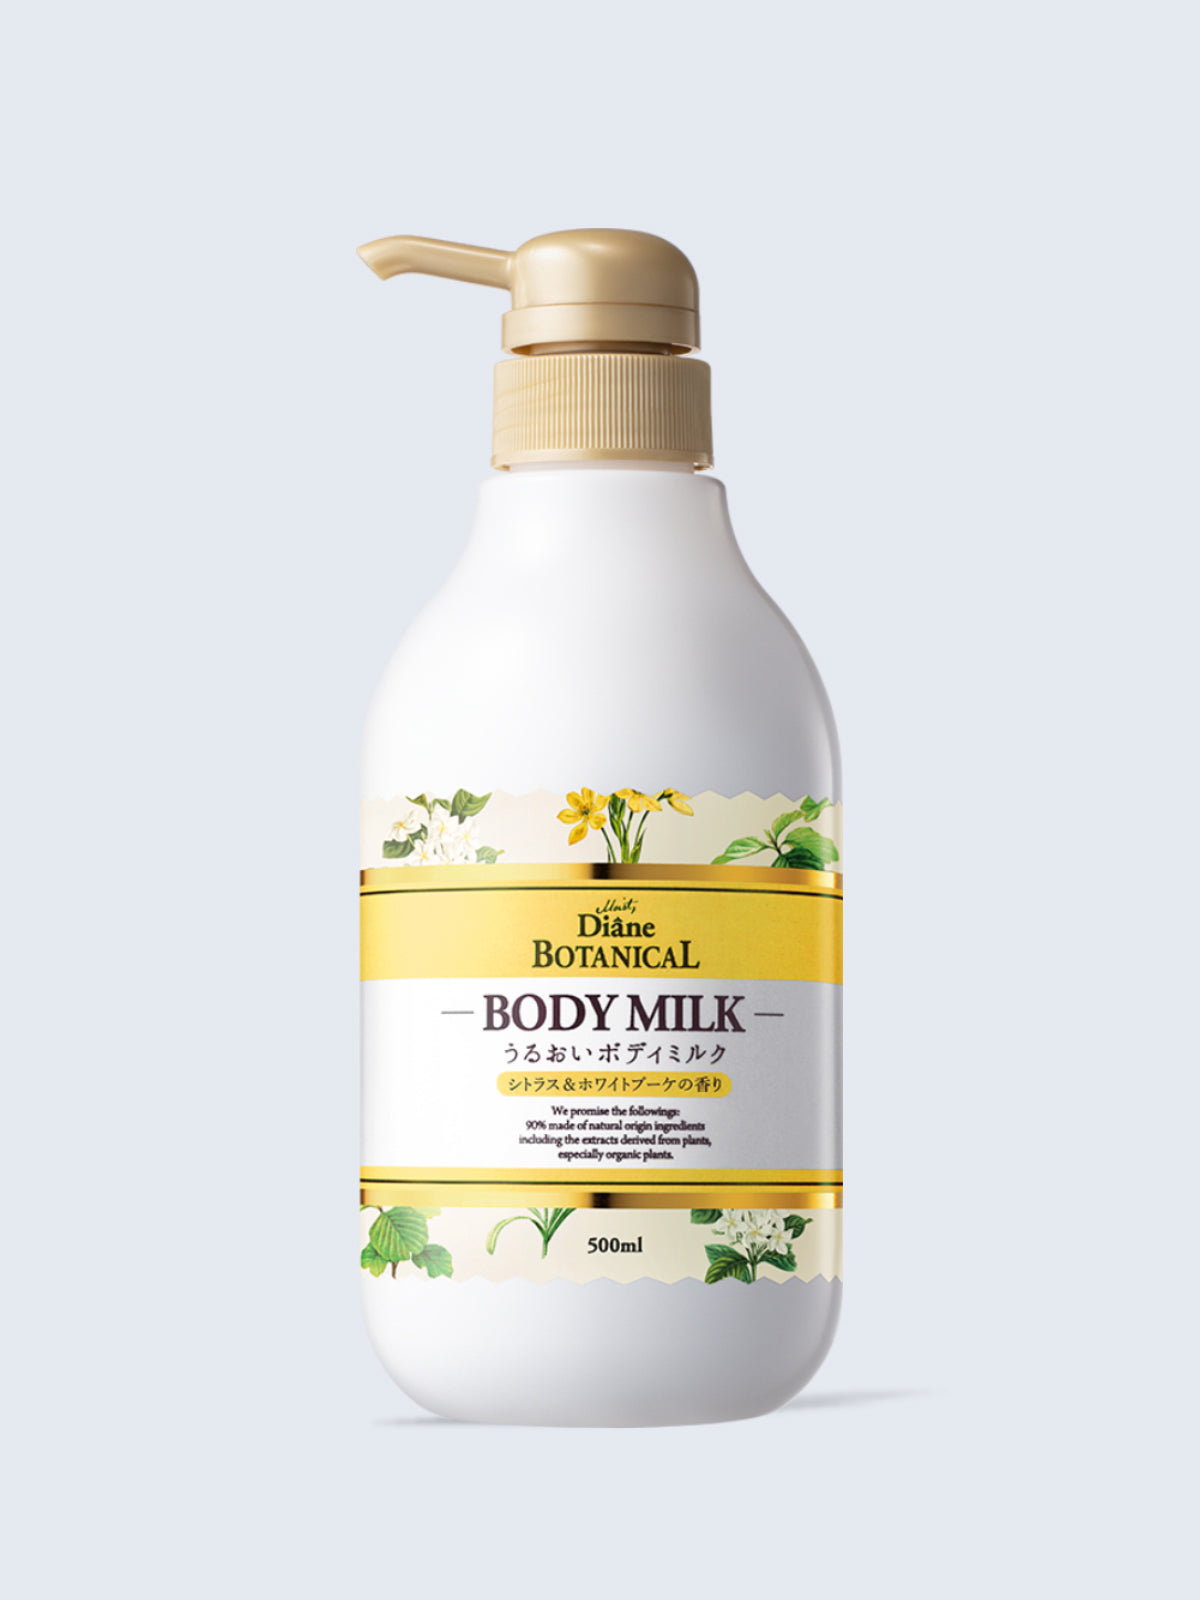 ボディミルク [敏感肌にもやさしい] シトラスホワイトブーケの香り ダイアンボタニカル 500mL NatureLab Store